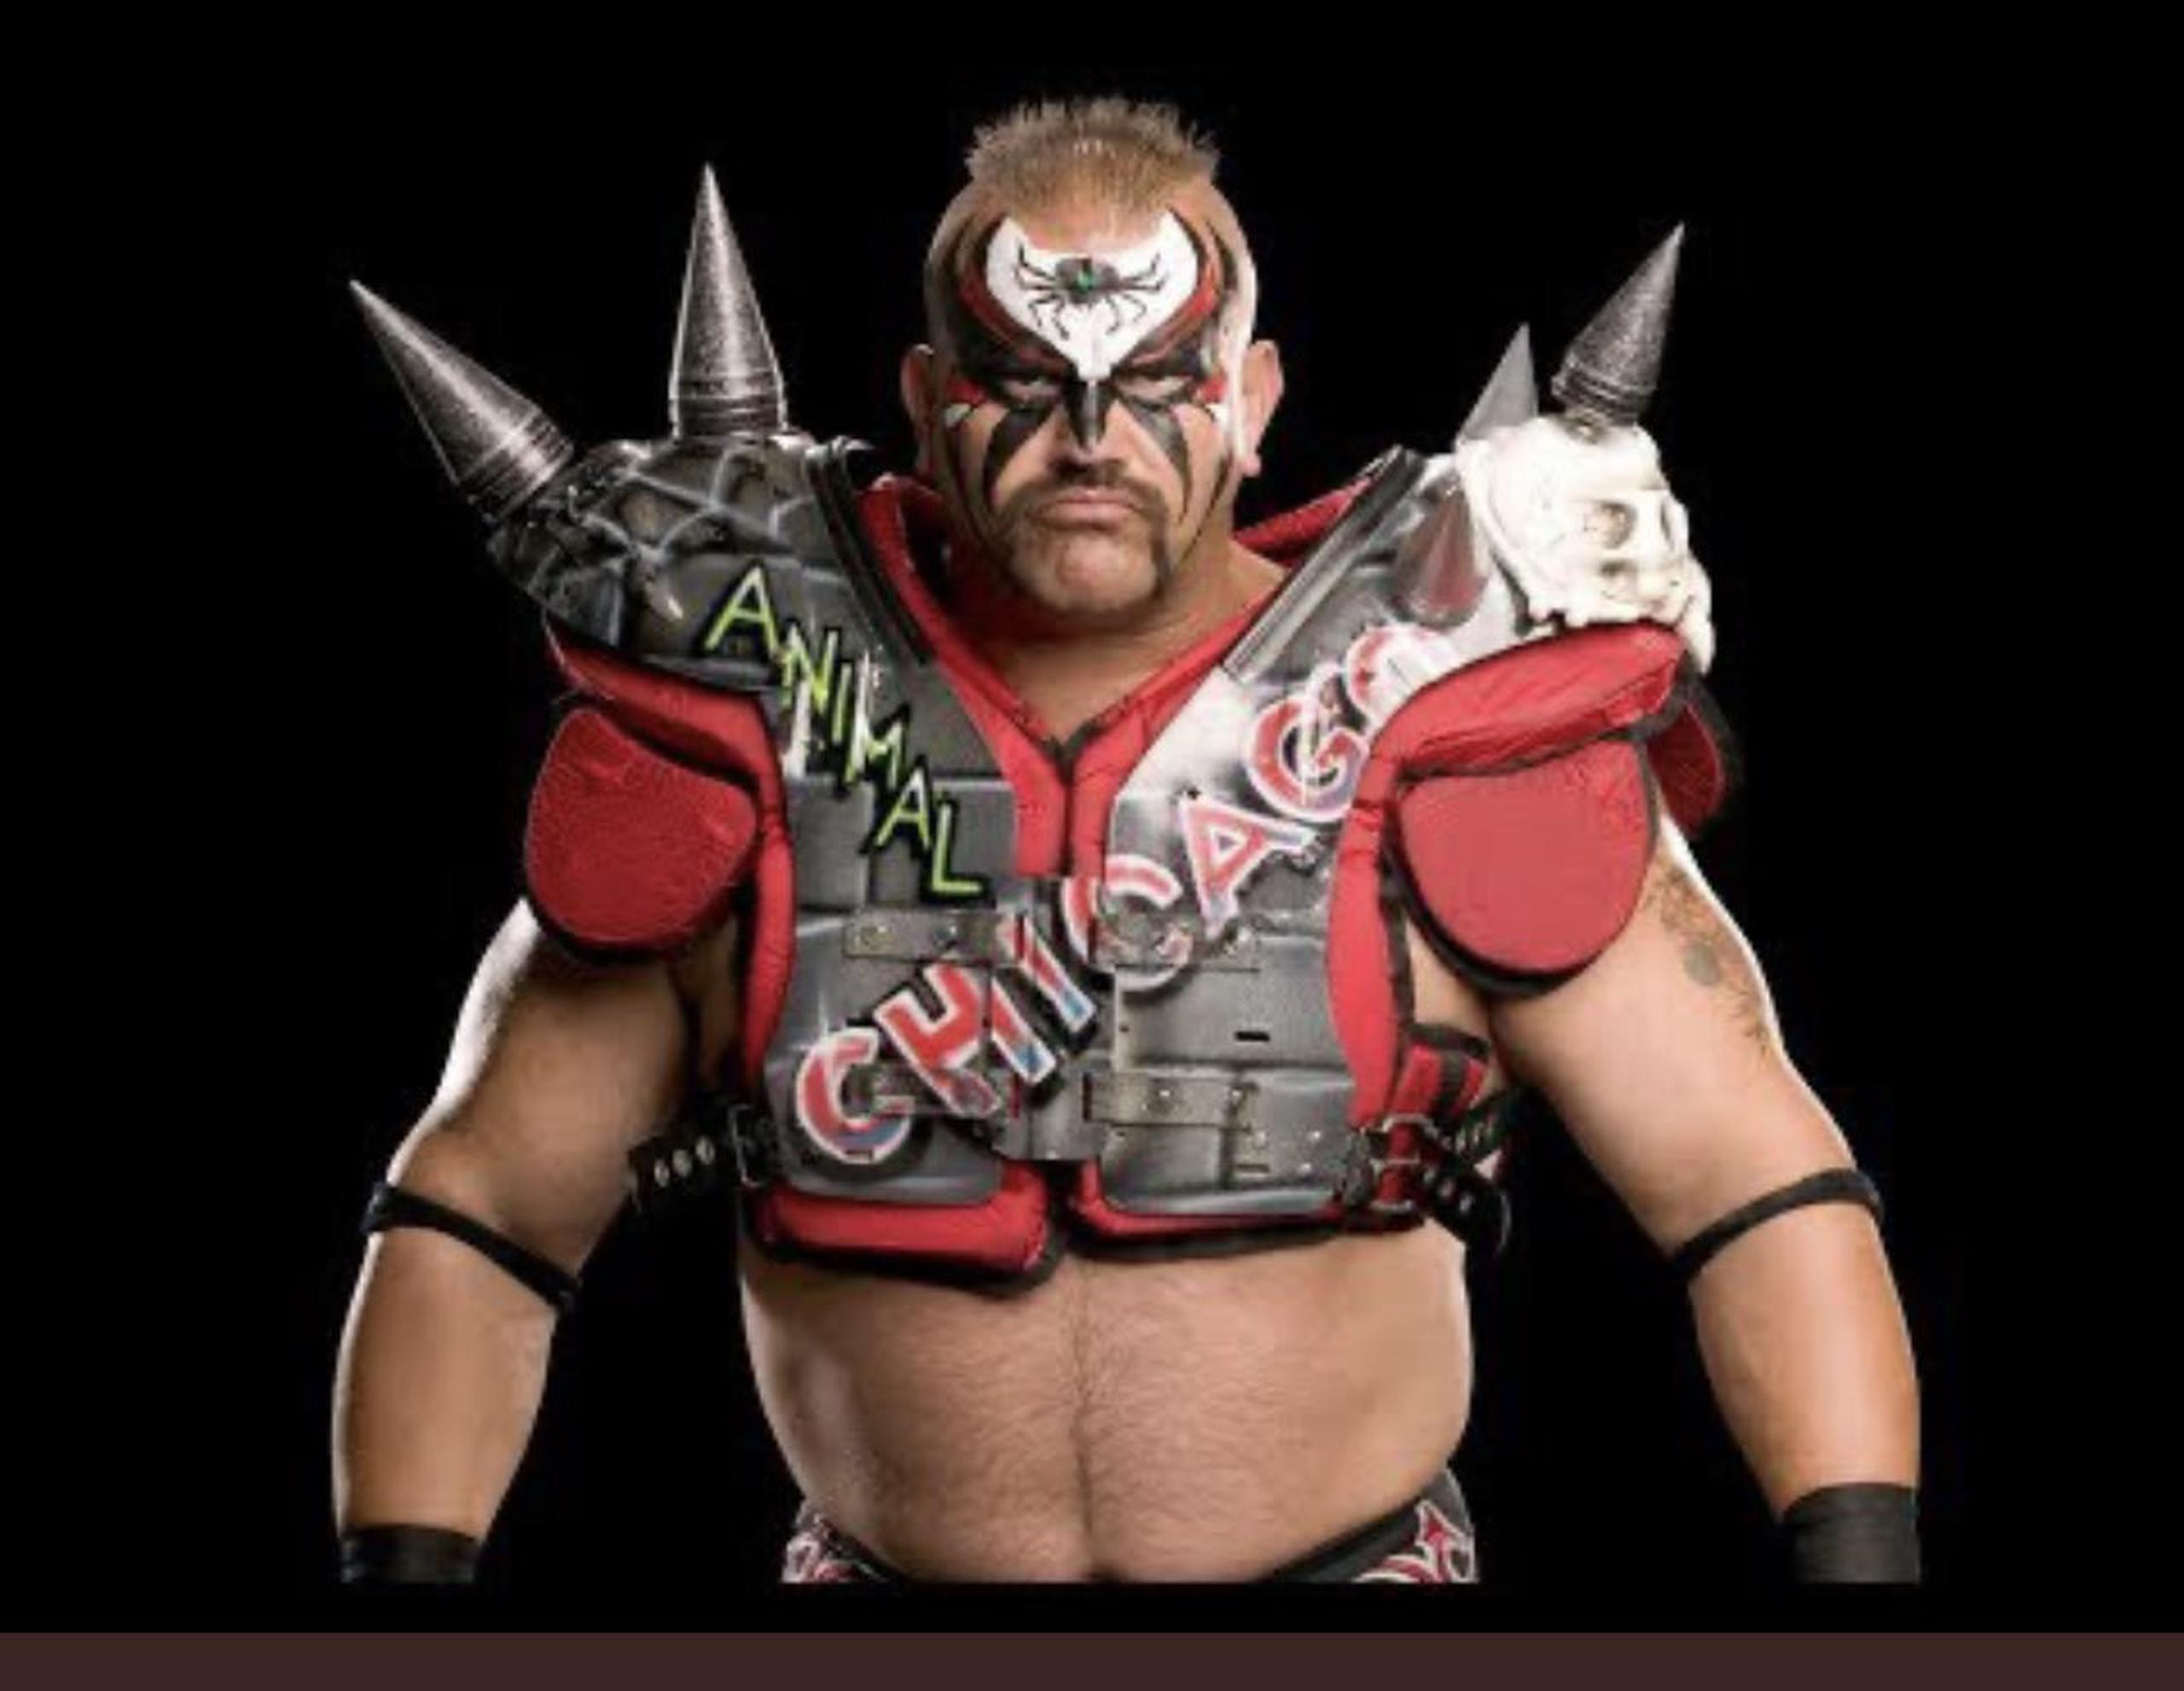 El luchador era conocido como Animal, uno de los integrantes de la pareja Road Warriors en la WCW y Legion of Doom en la WWE.